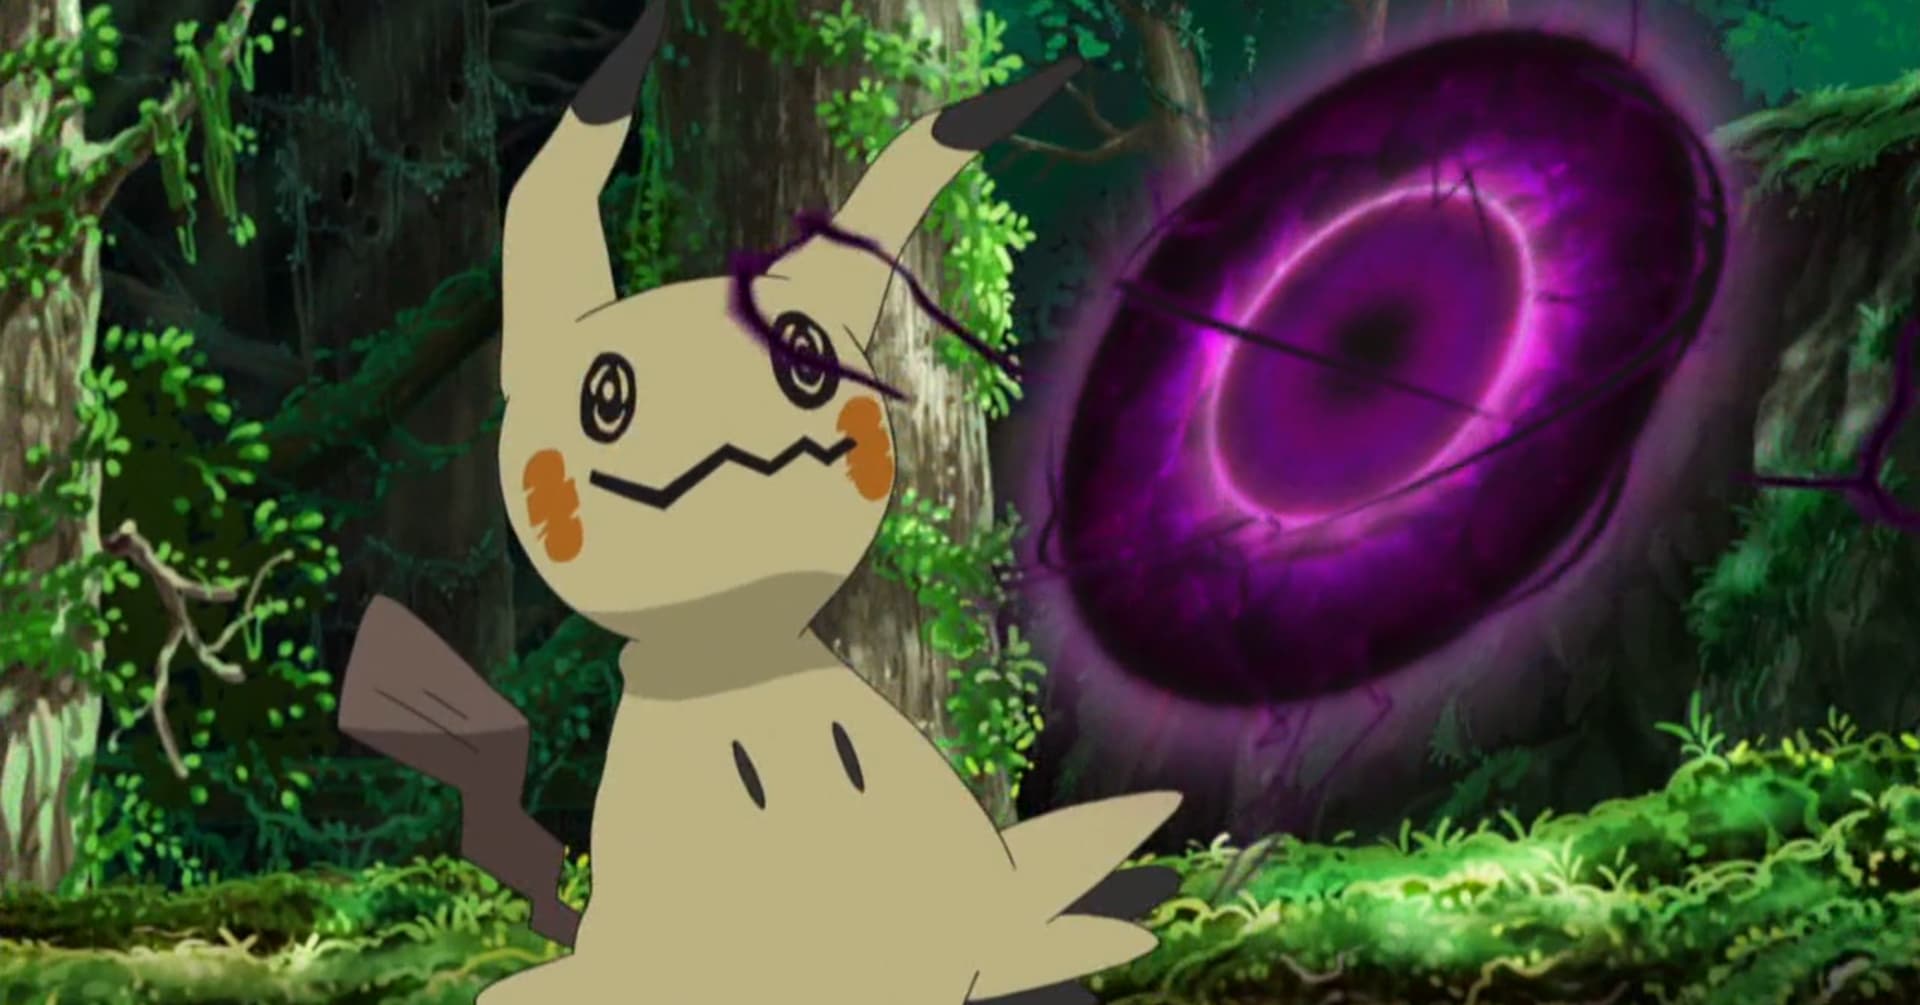 Chainchomped: Mimikyu is a good Pokémon